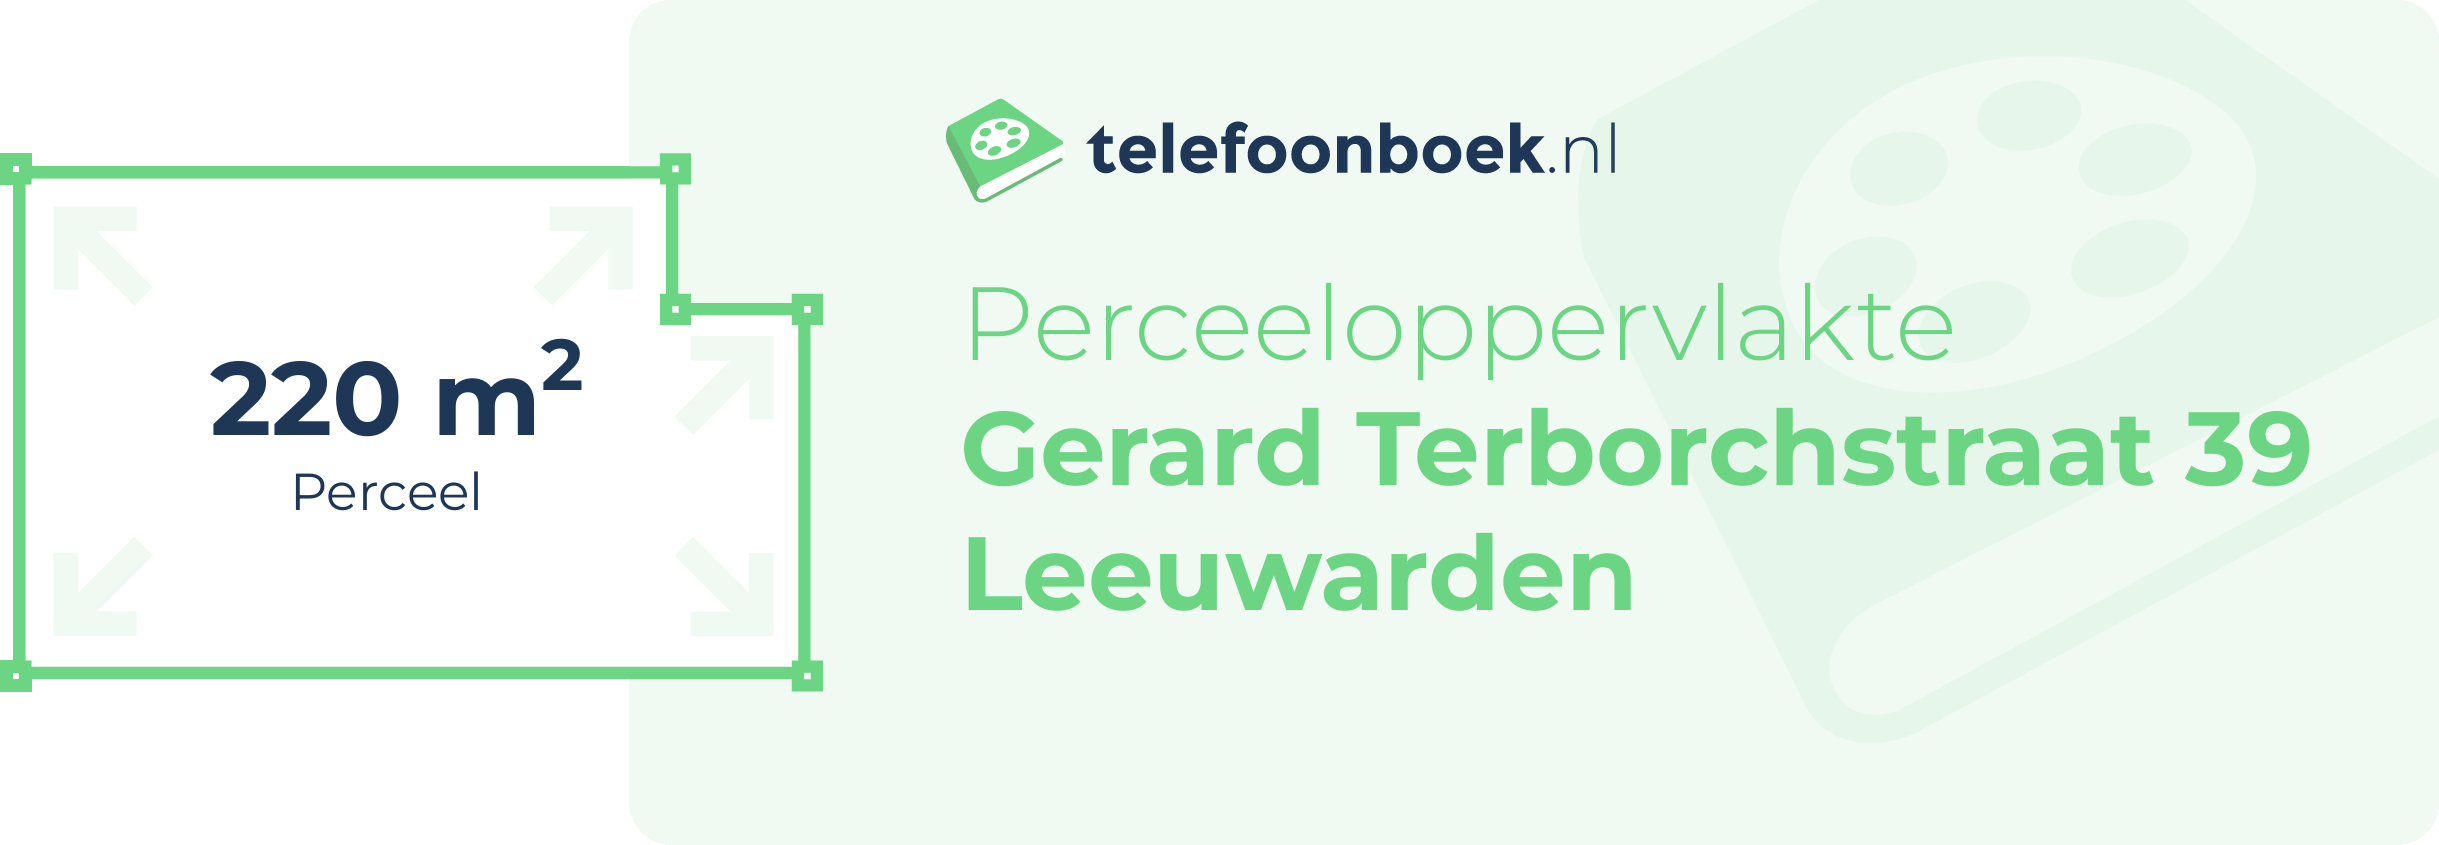 Perceeloppervlakte Gerard Terborchstraat 39 Leeuwarden